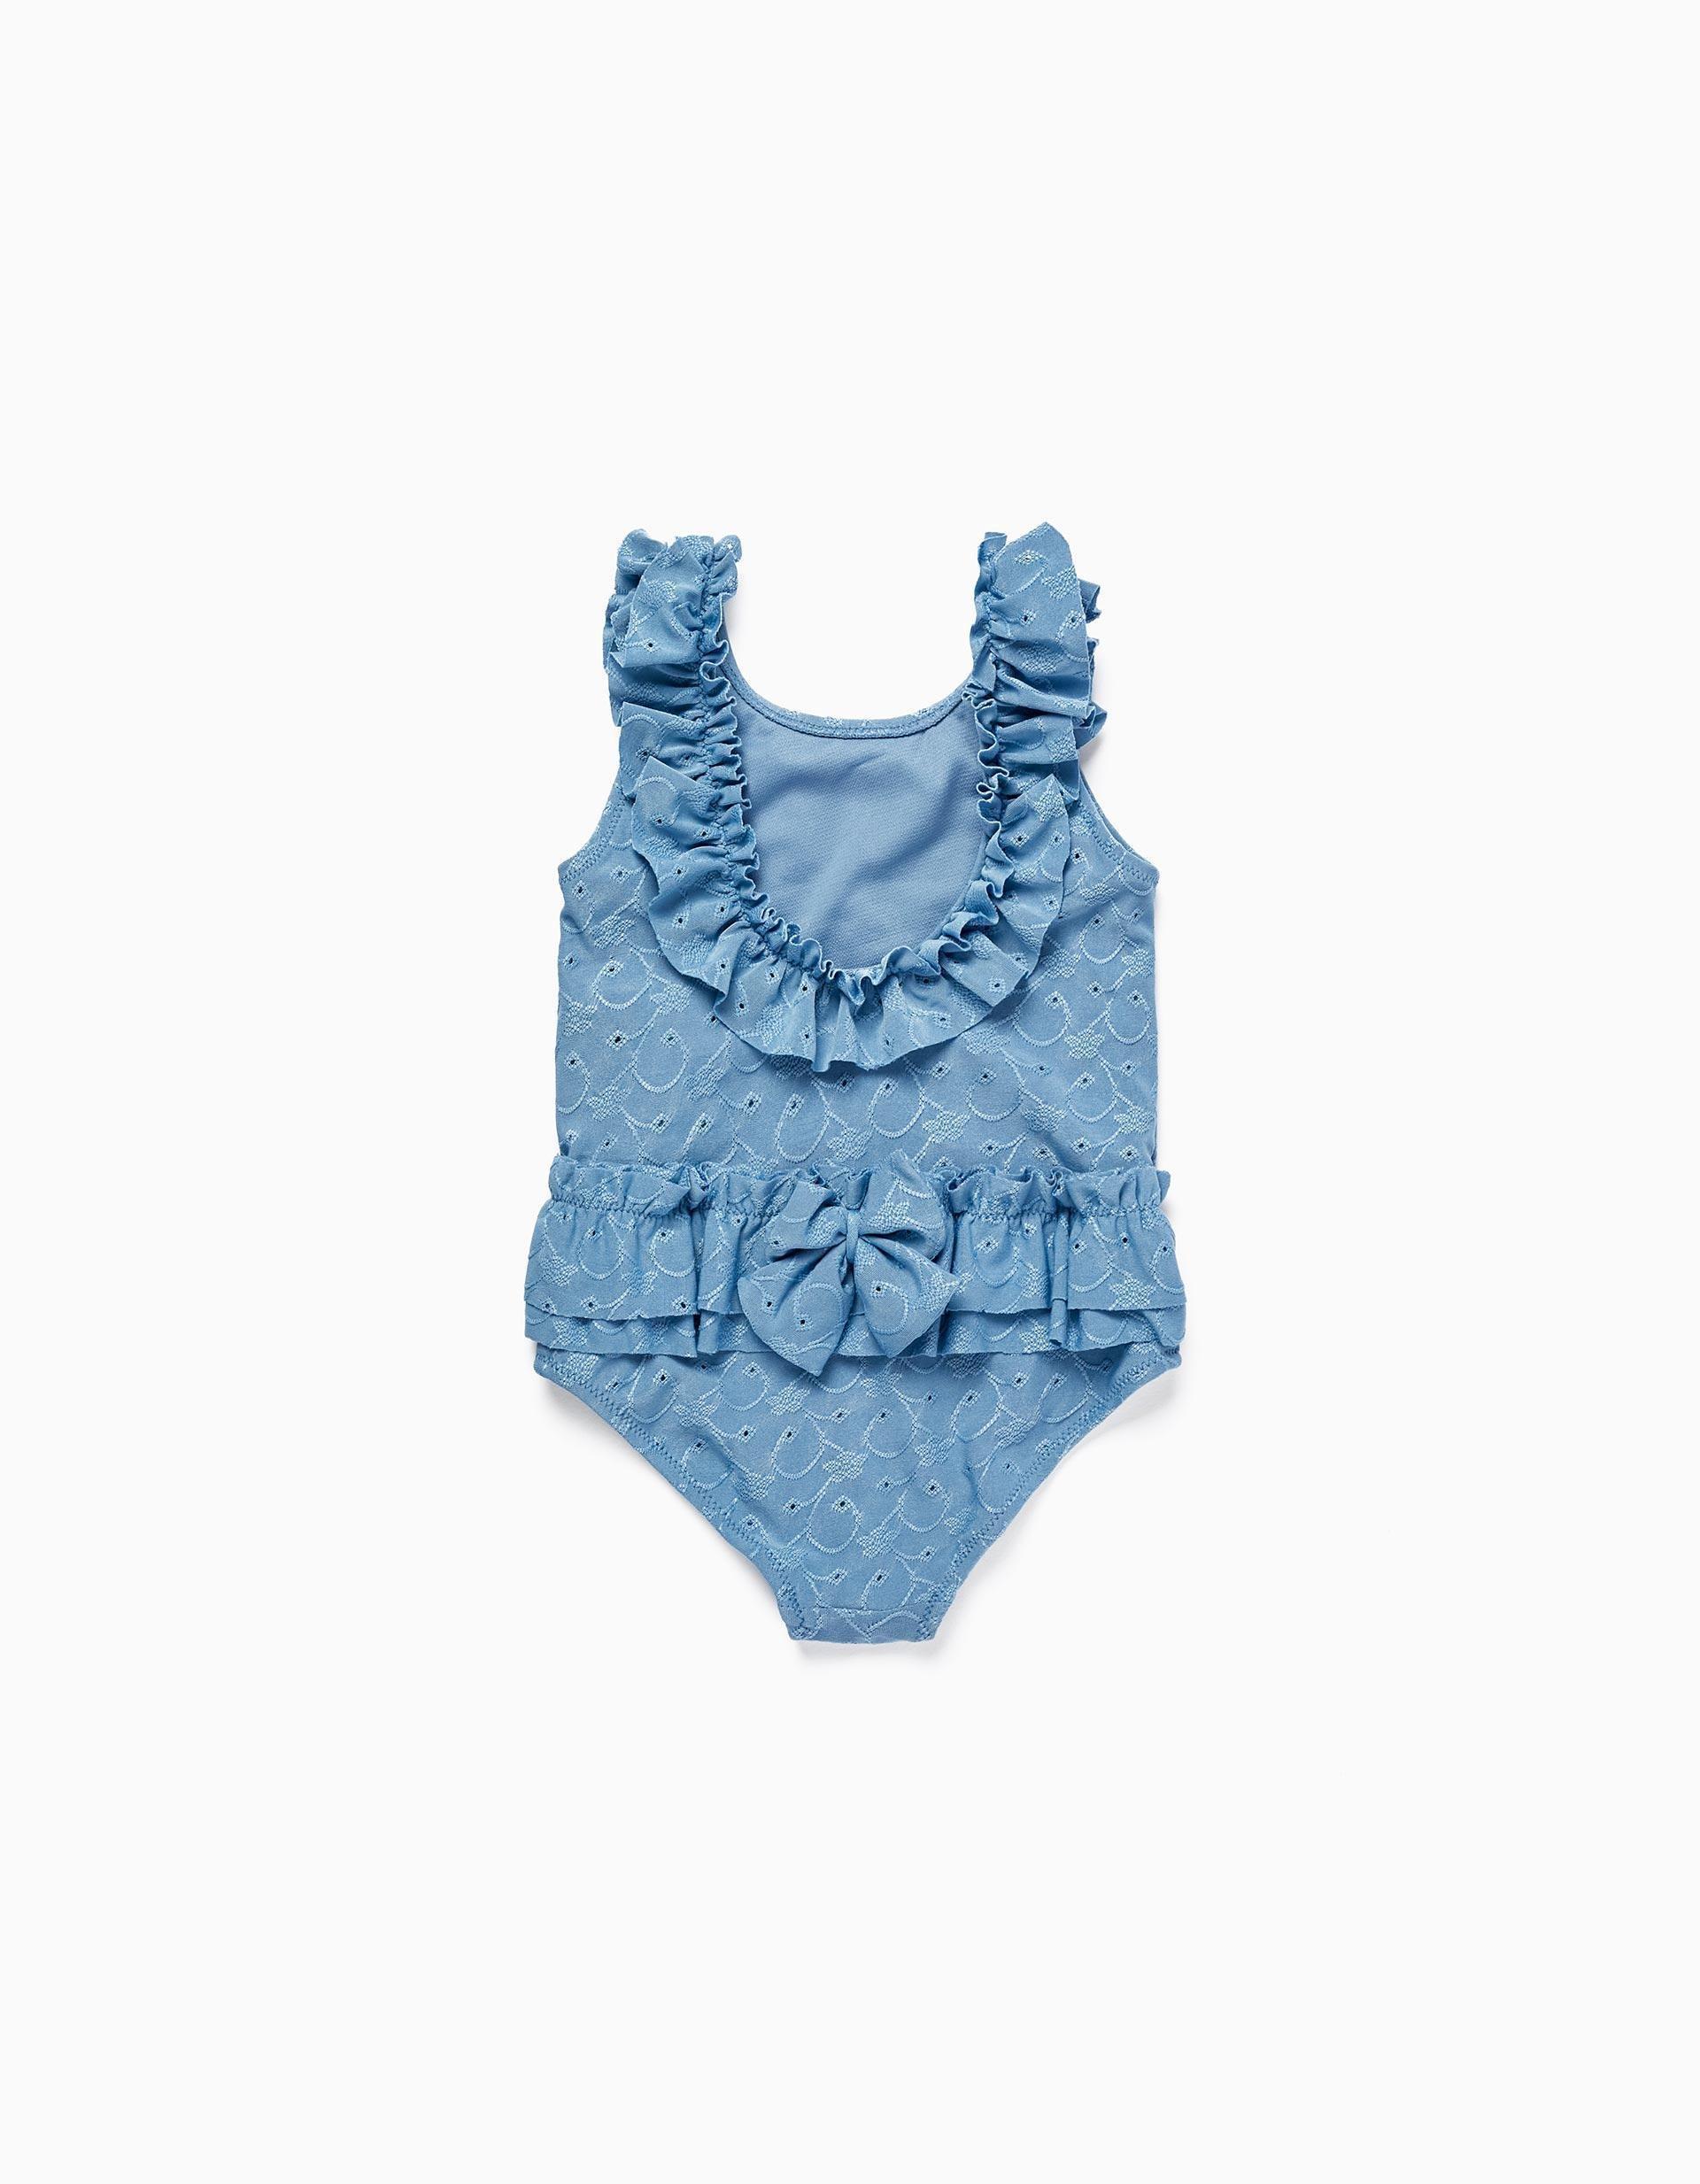 Gant - Blue Ruffled Swimsuit, Kids Girls